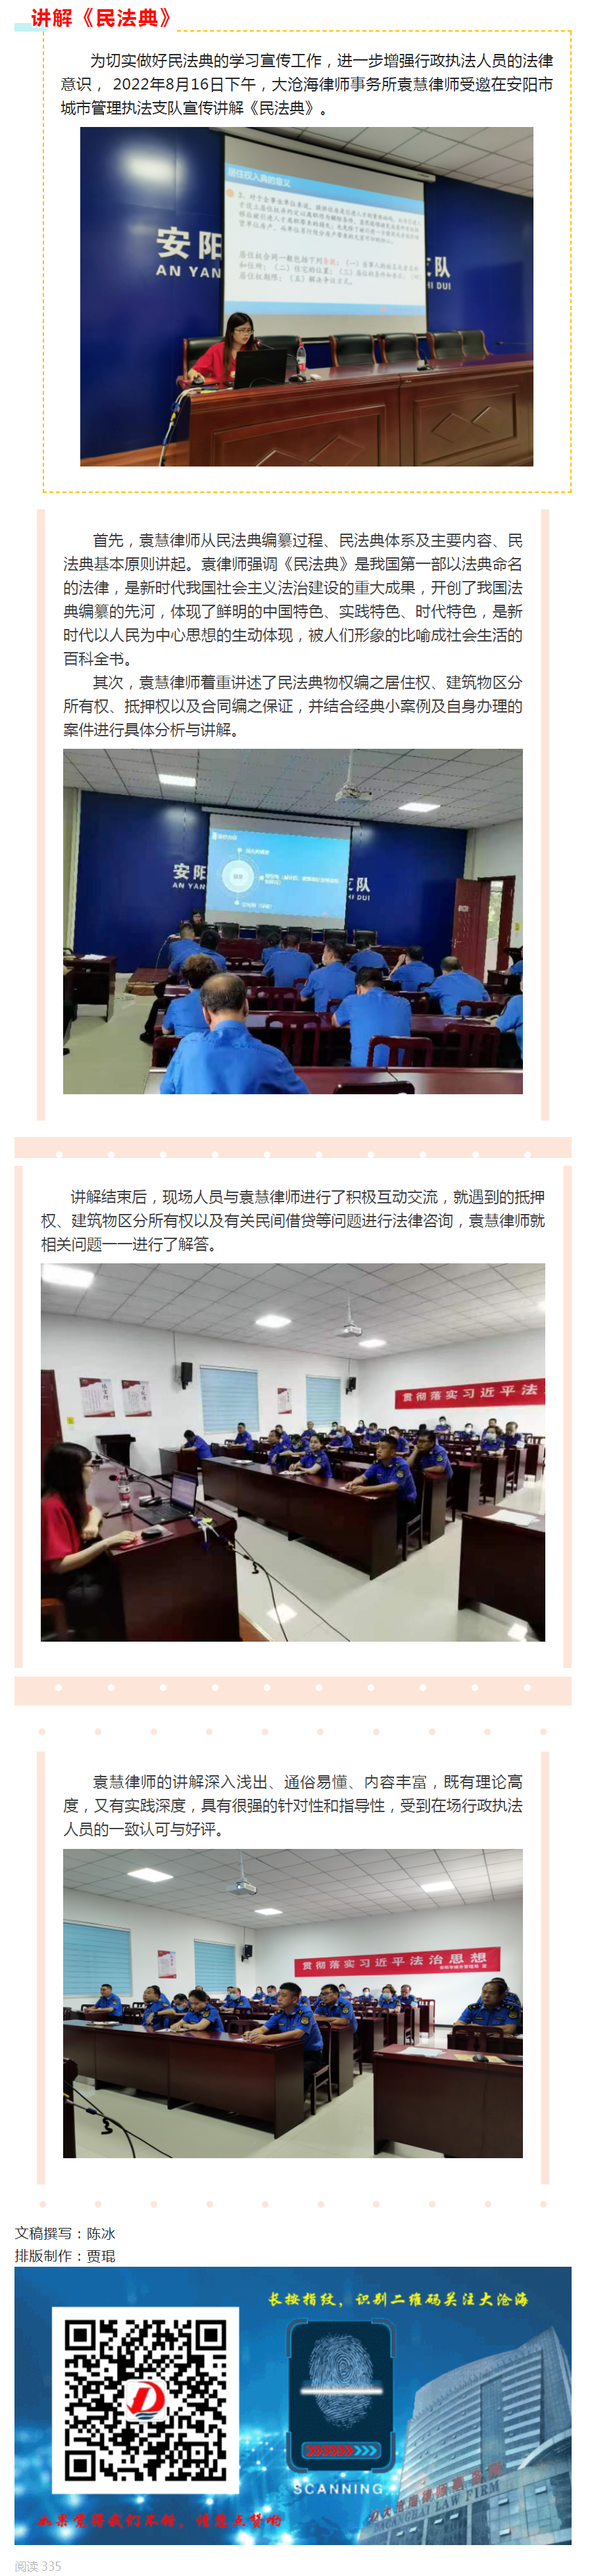 袁慧律师为安阳市城市管理执法支队宣传讲解《民法典》